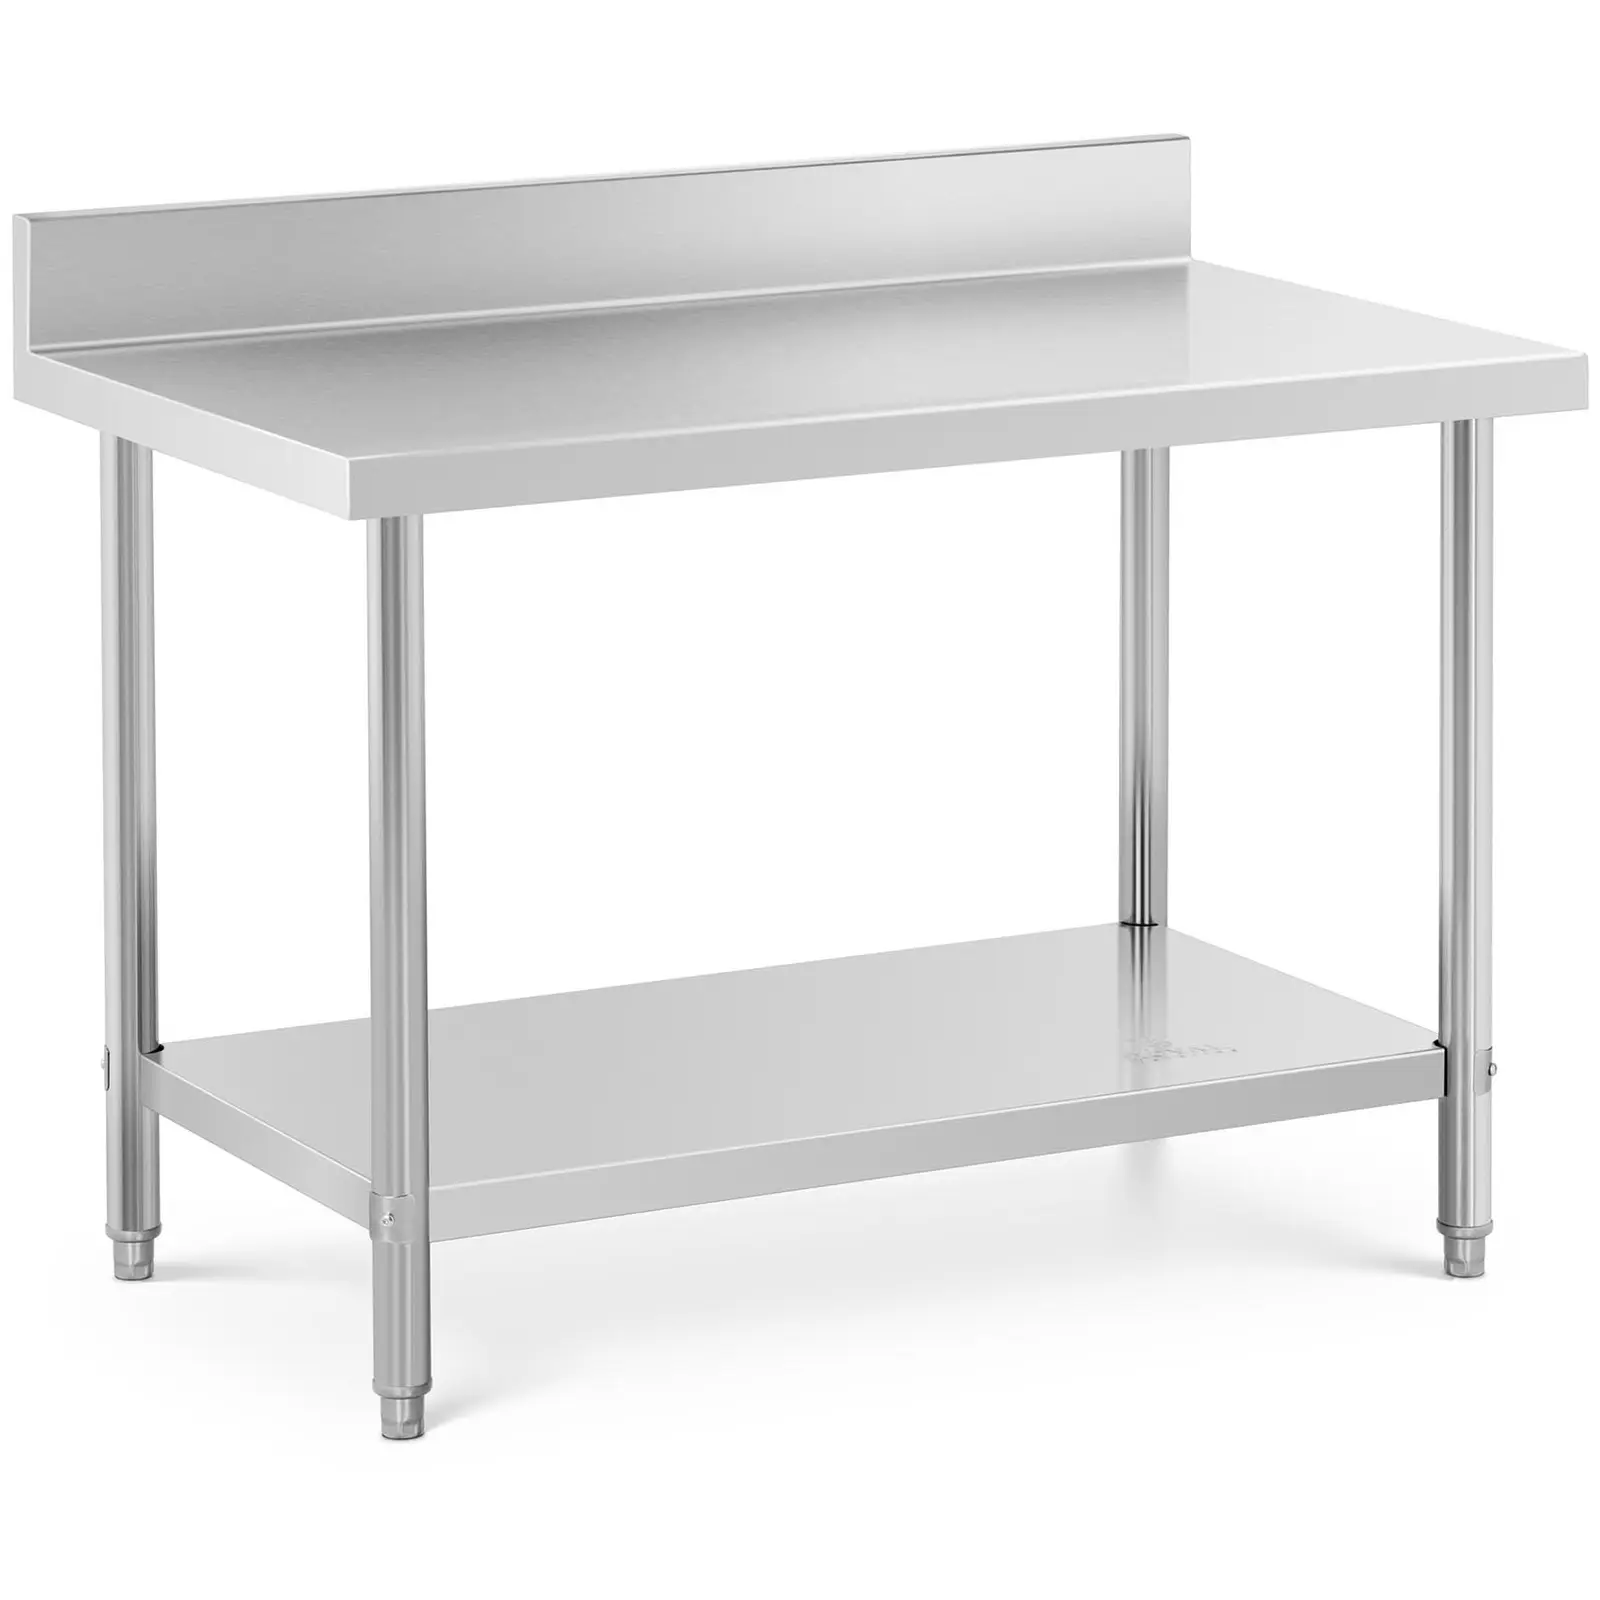 Pracovný stôl z nehrdzavejúcej ocele -lem - 120 x 70 cm - nosnosť 196 kg